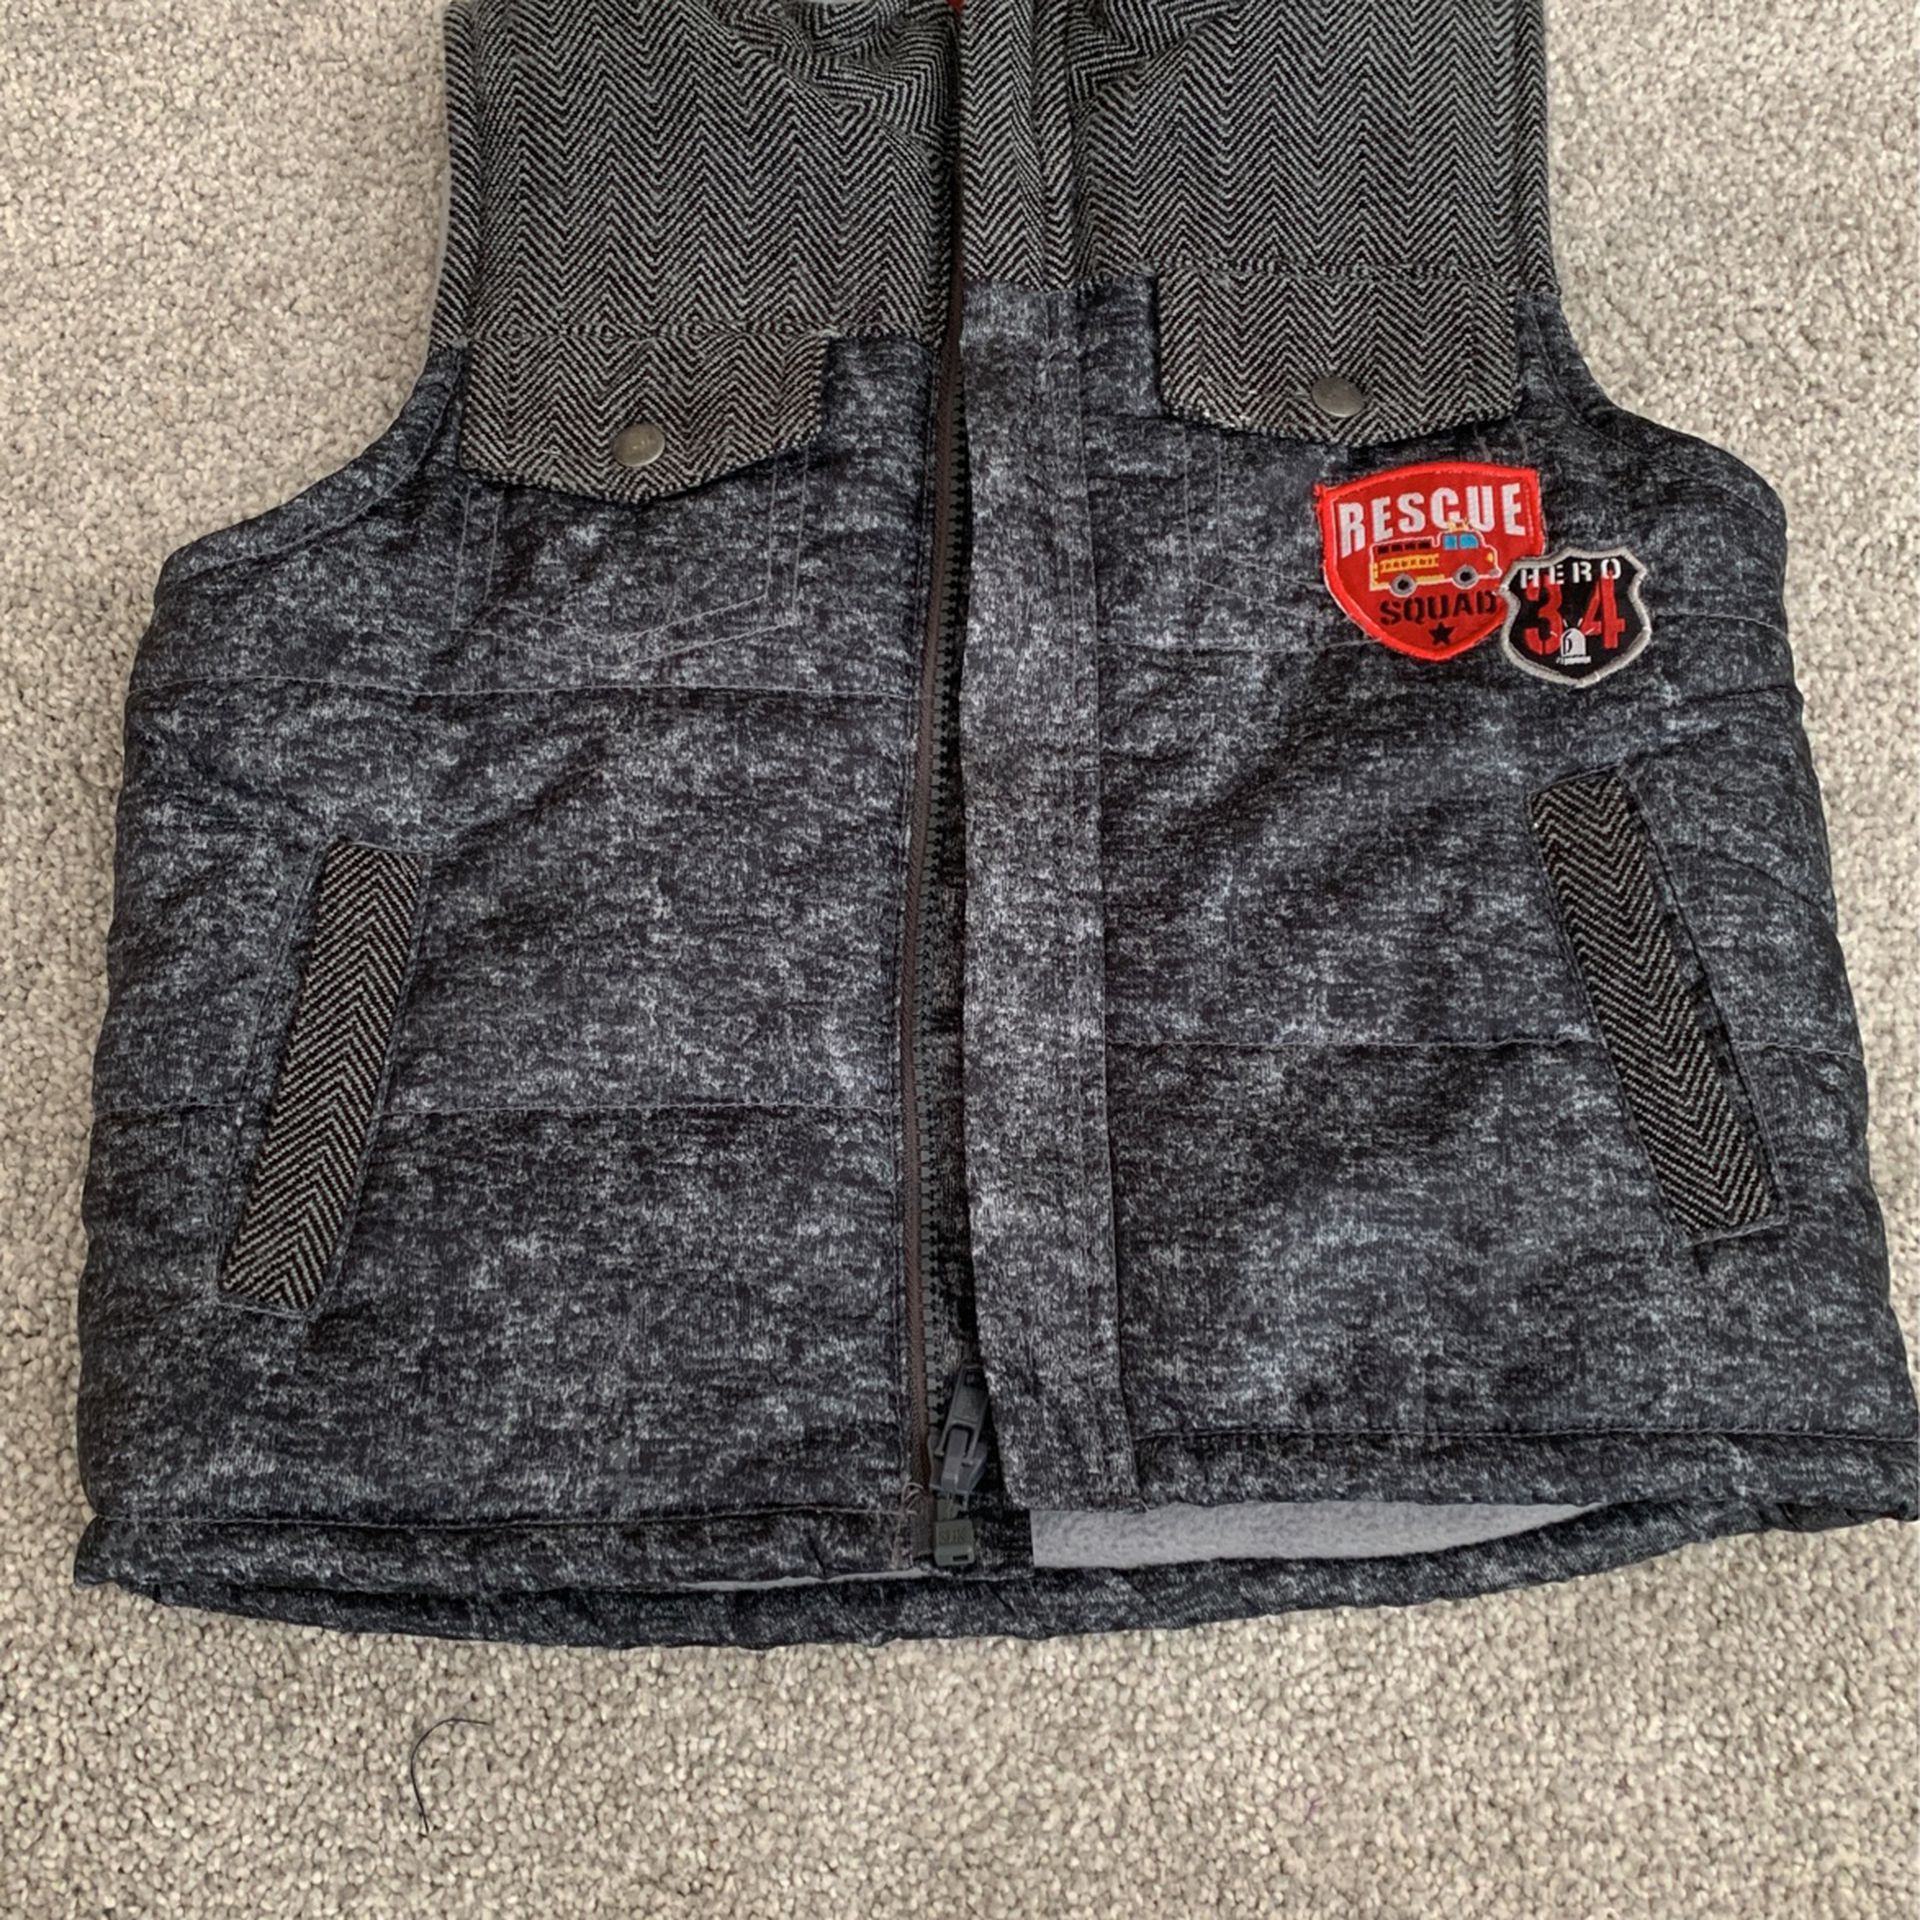 Winter Vest Size 5T